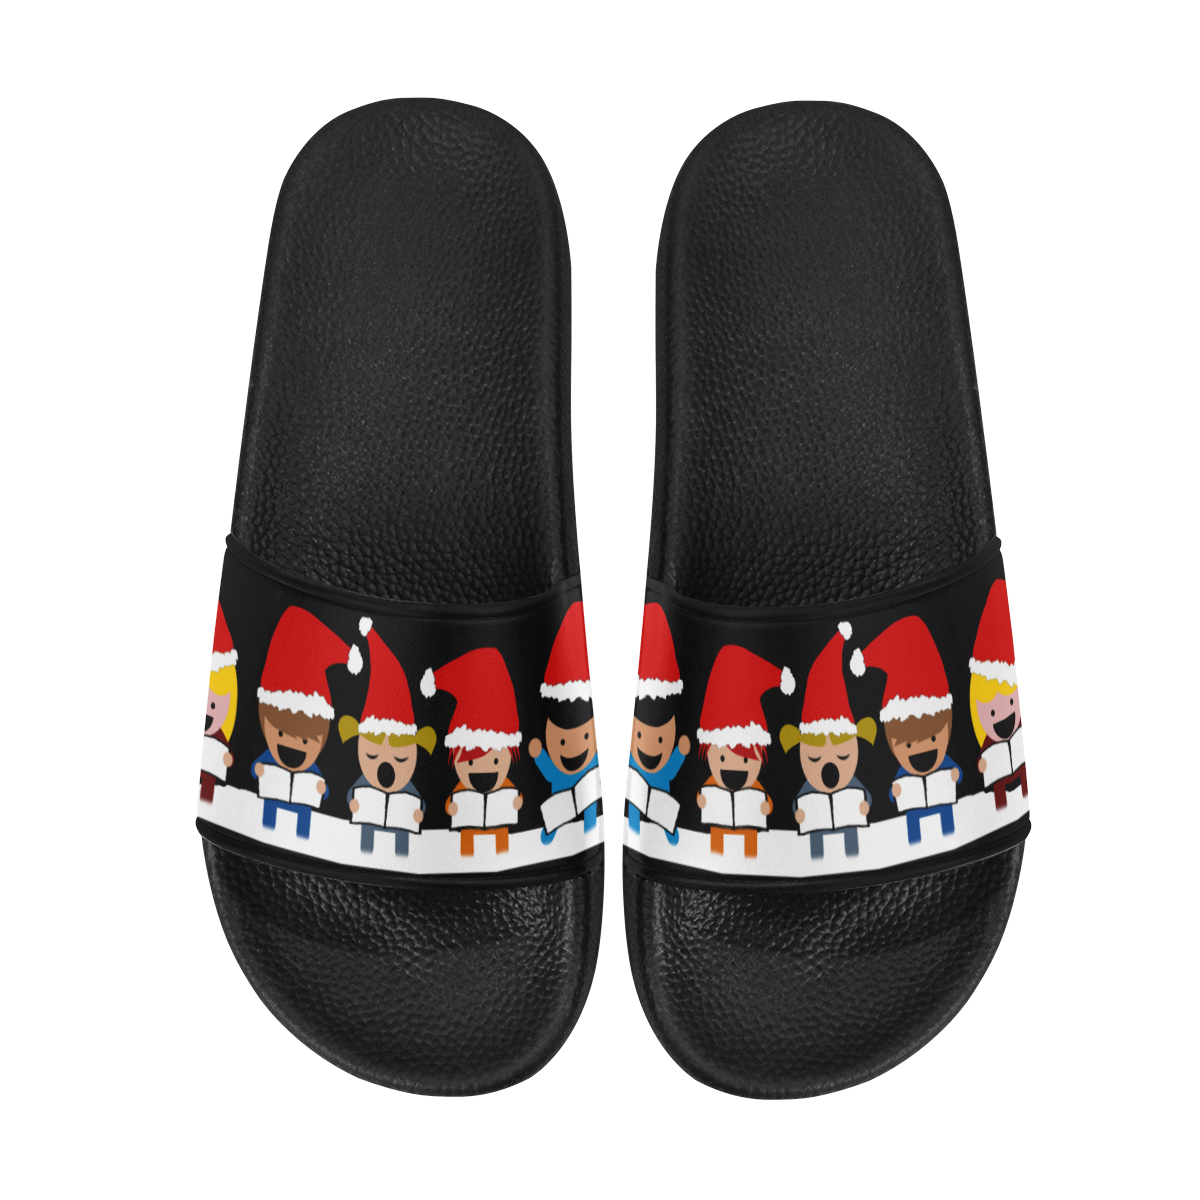 Christmas Carol Singers on Black Men's Slide Sandals (Model 057)